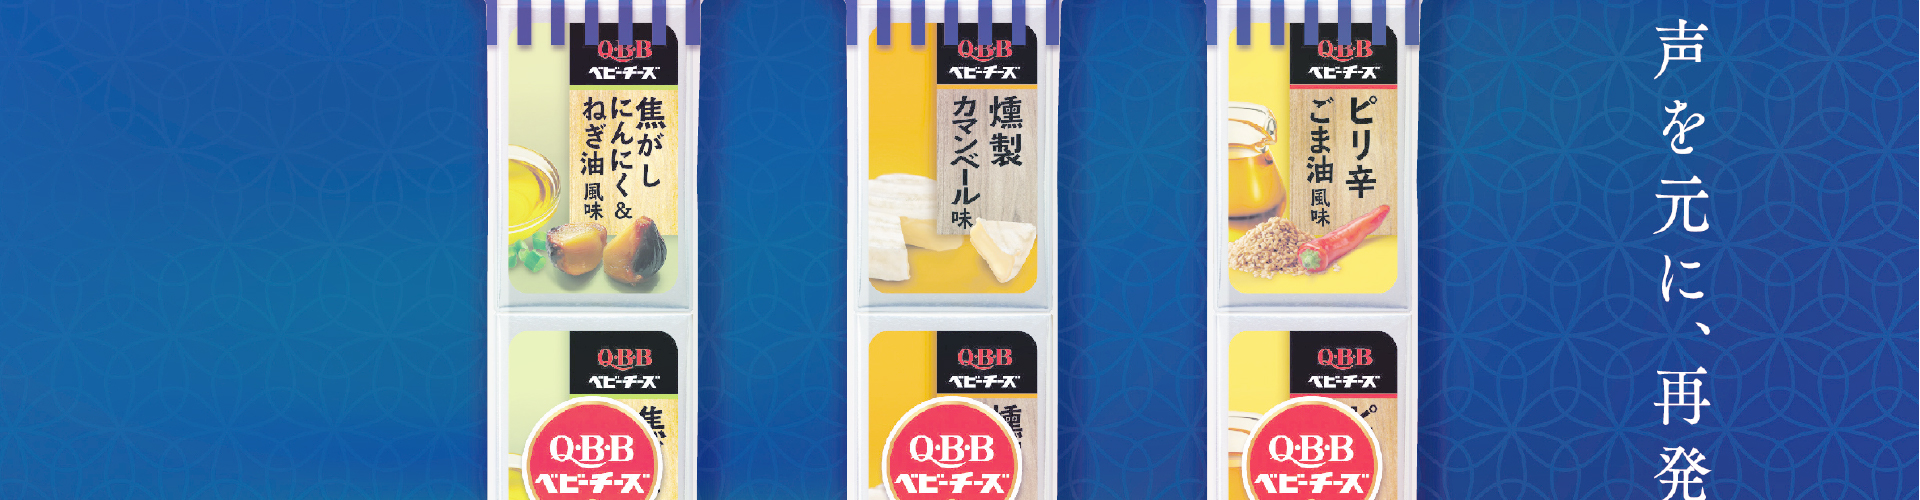 QBB厳選おつまみベビーチーズ 雑誌広告